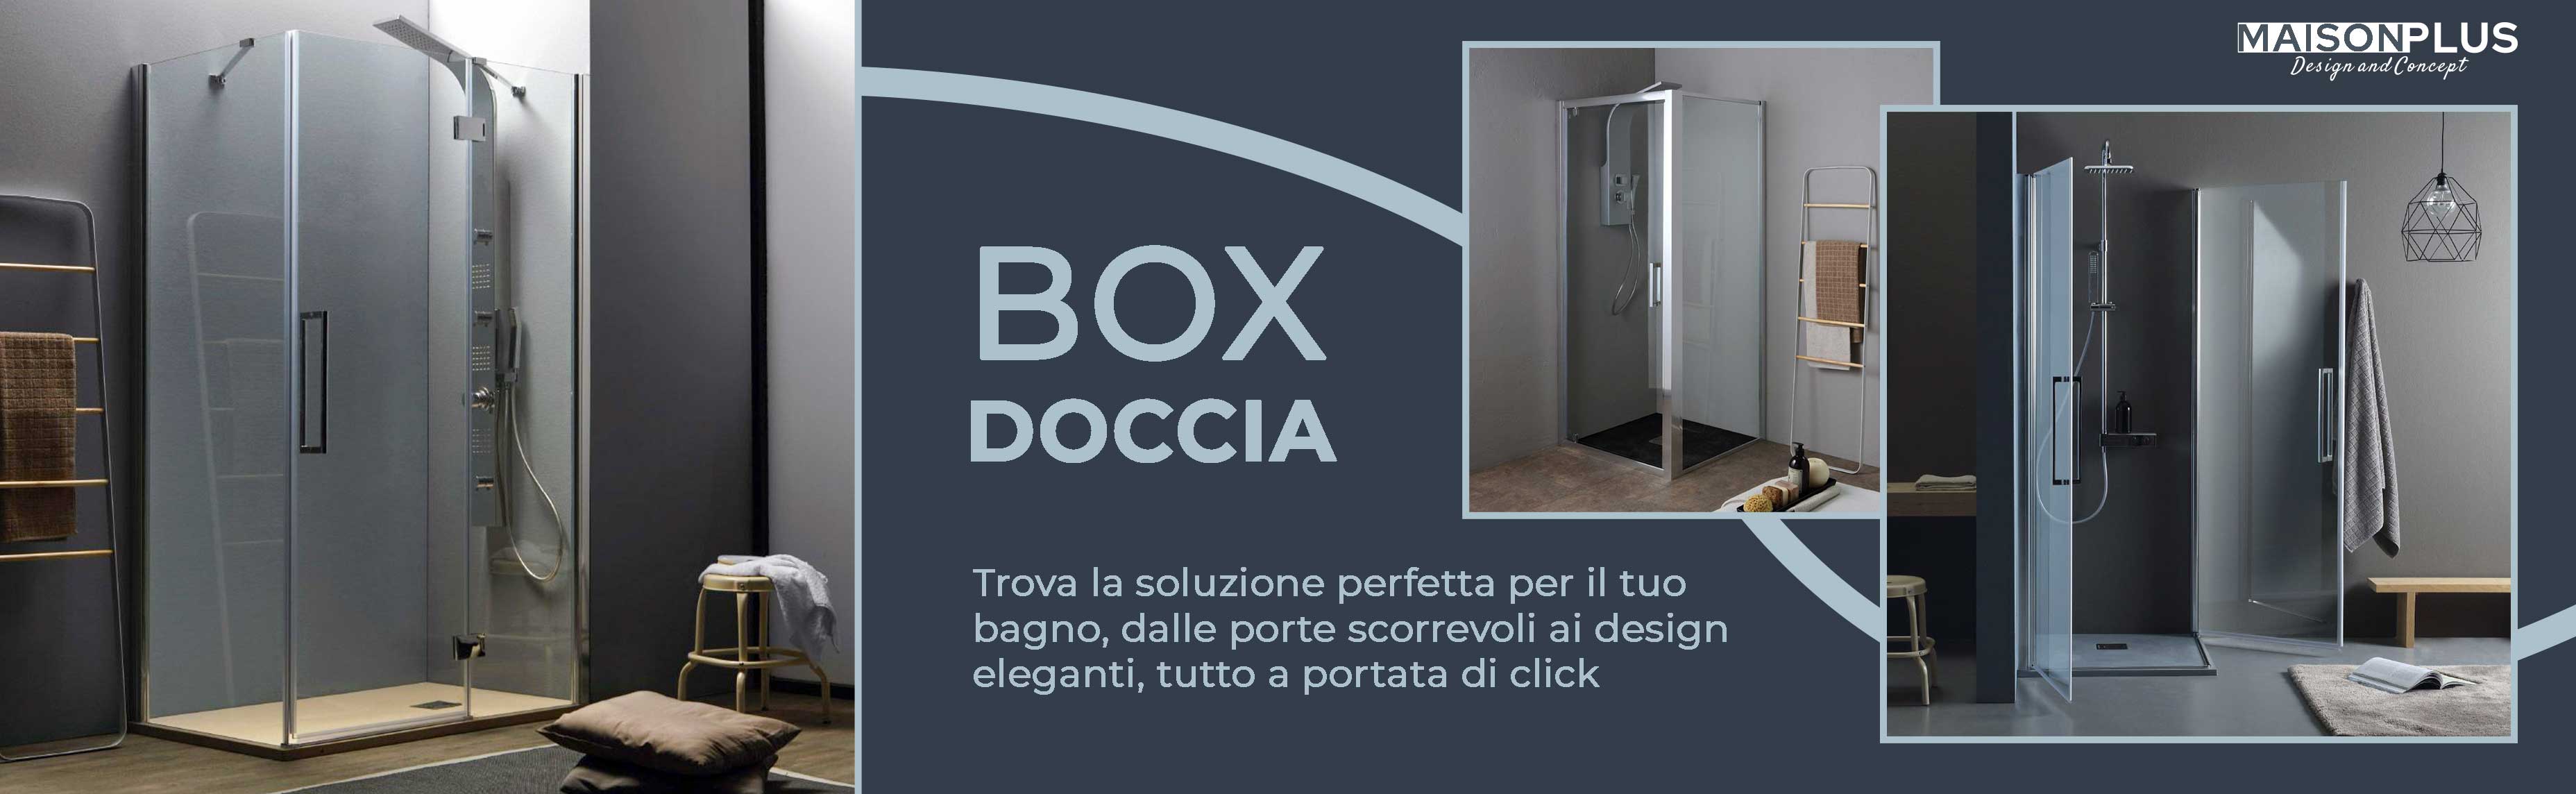 _box-doccia-maison-plus-arreda-il-tuo-bagno.jpg